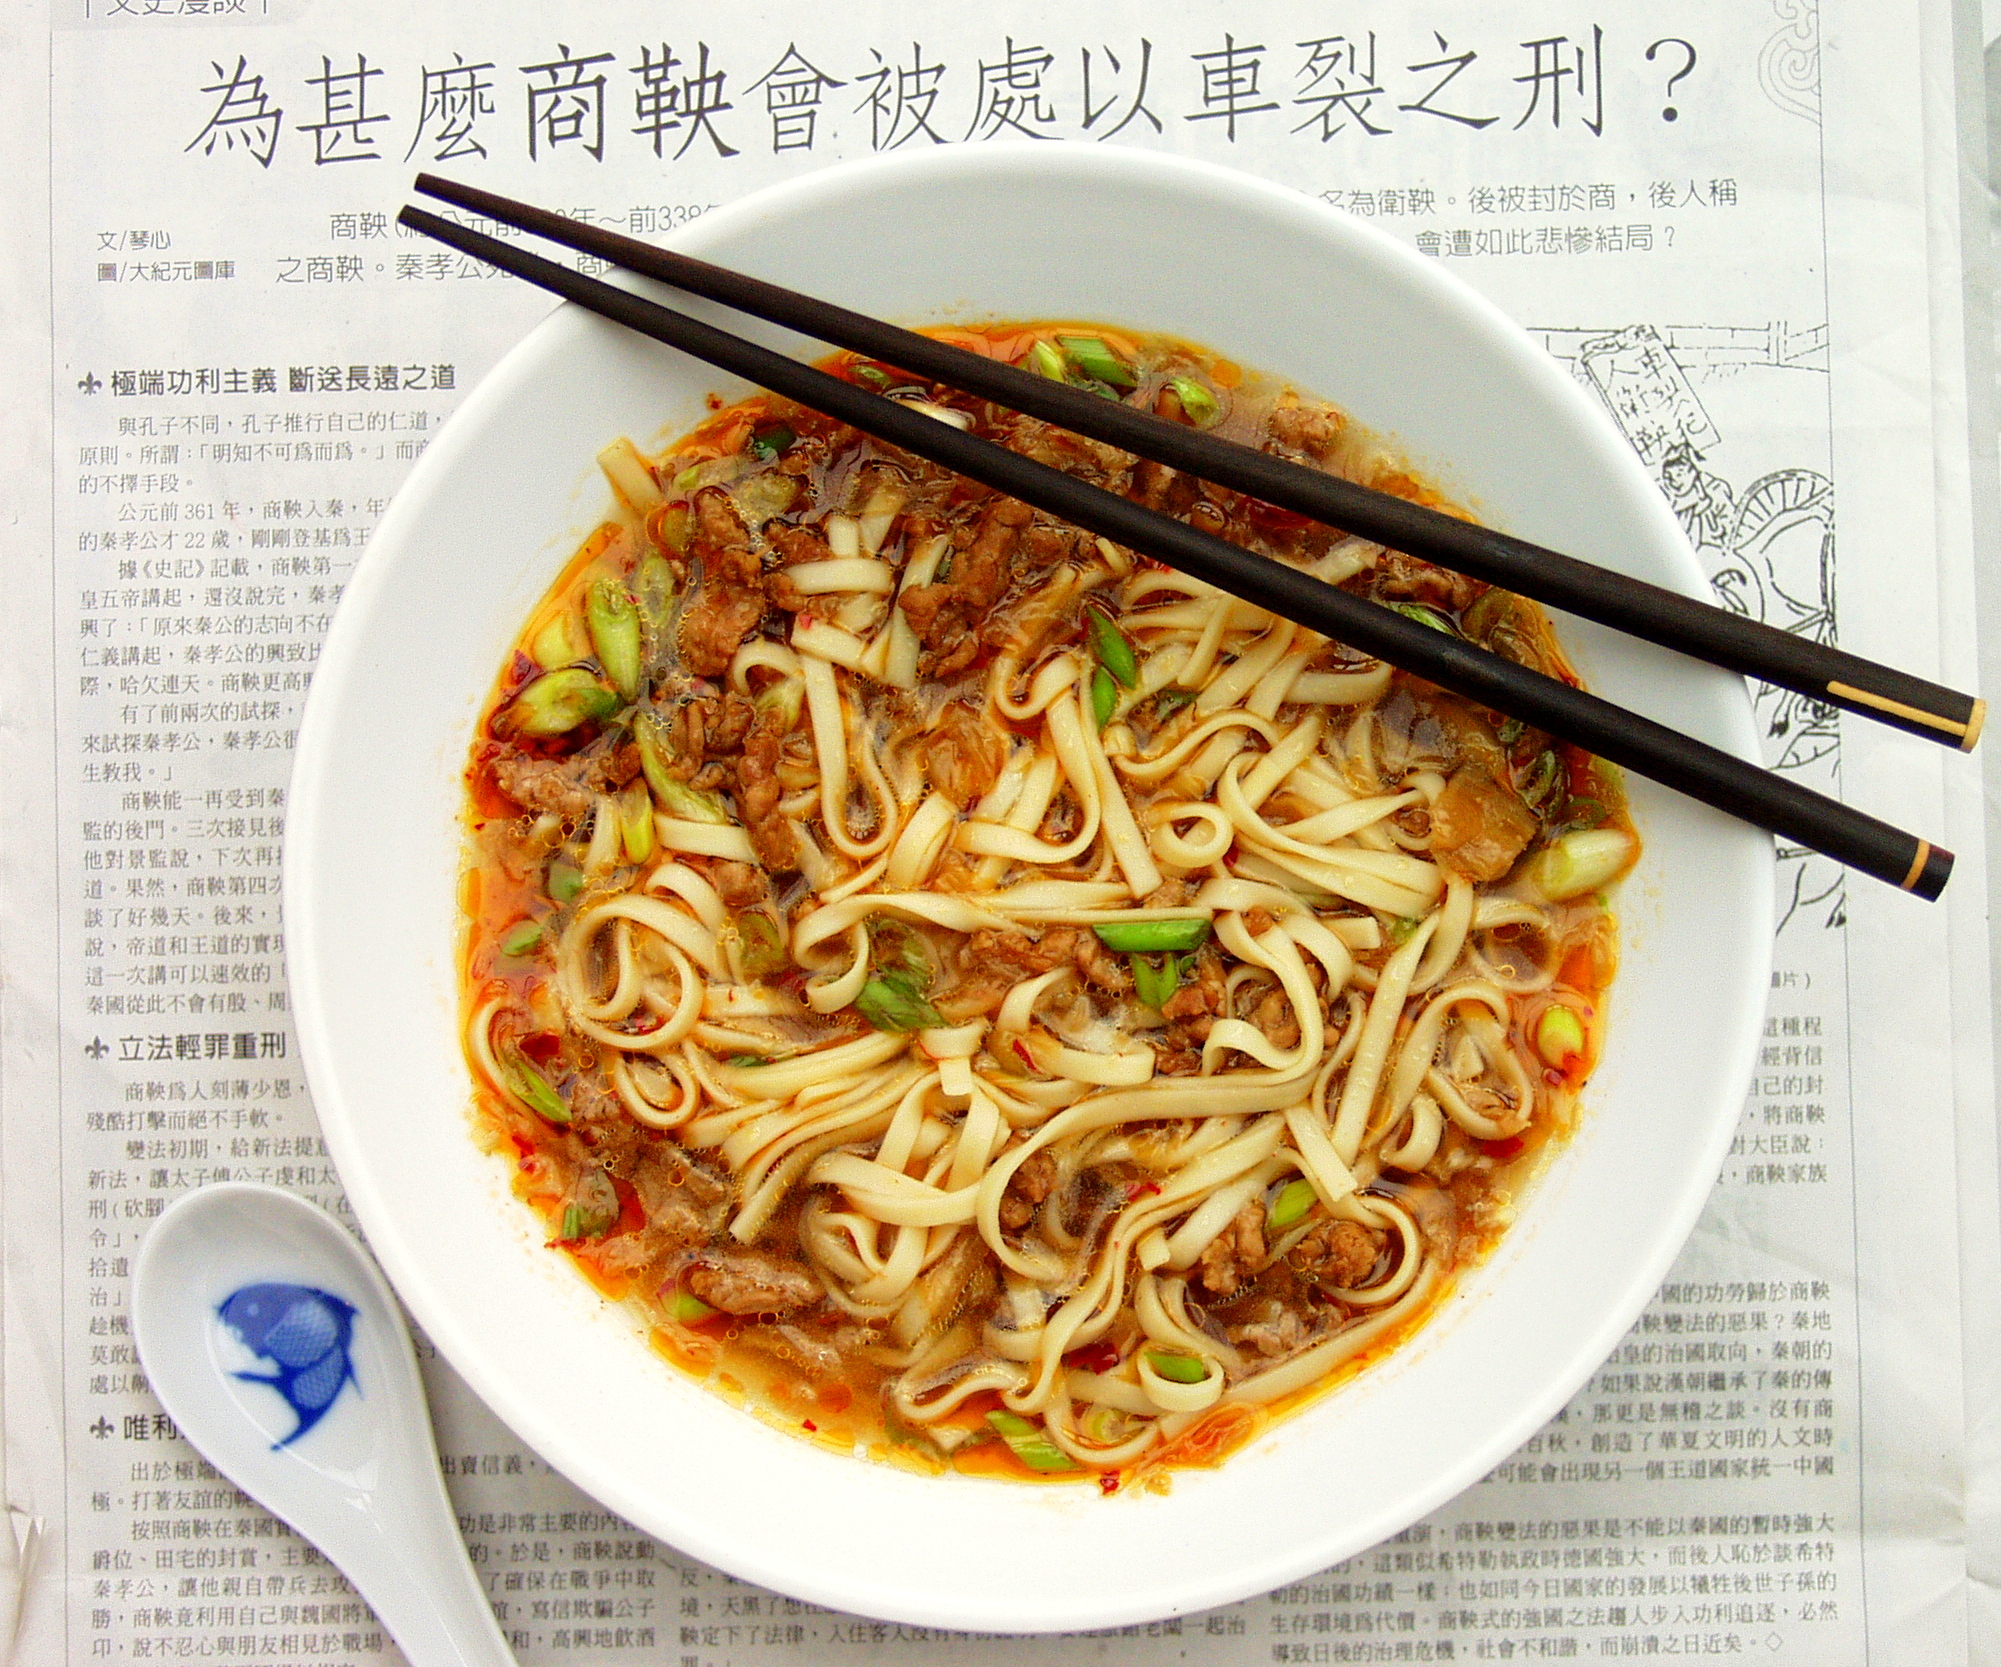 Recipes Meme Box Noodles Near Me Clipart Images Pics Photos Pictures